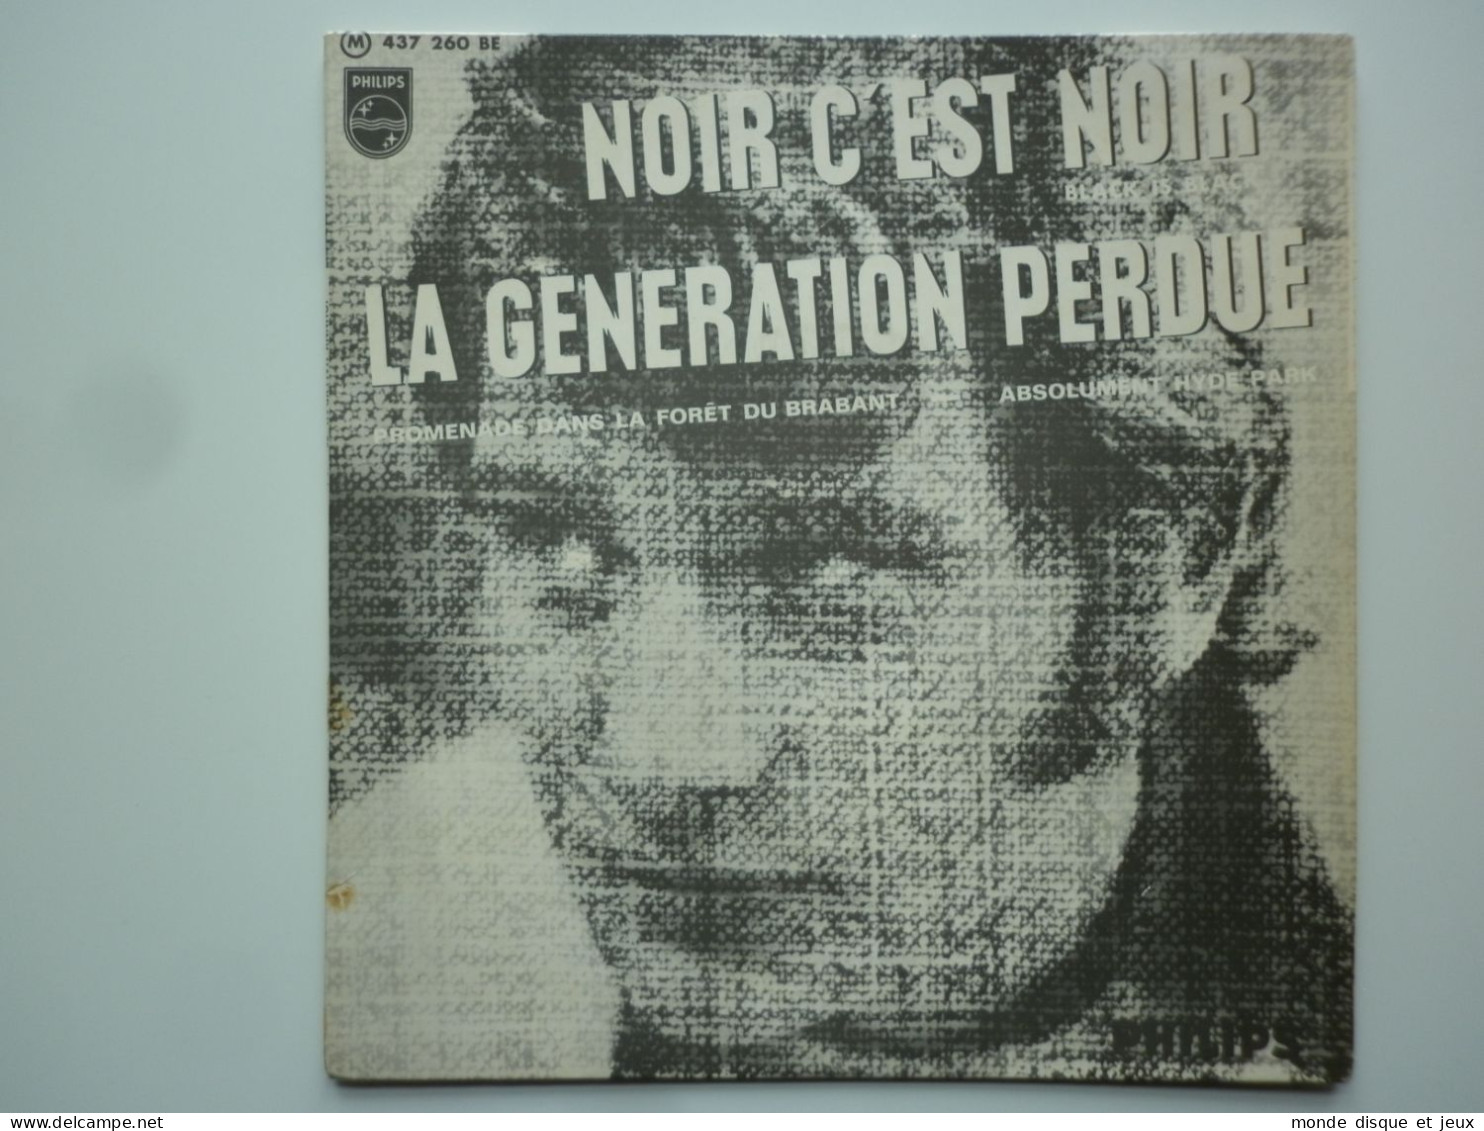 Johnny Hallyday 45Tours EP Vinyle Noir C'est Noir / La Génération Perdue JAT - 45 G - Maxi-Single